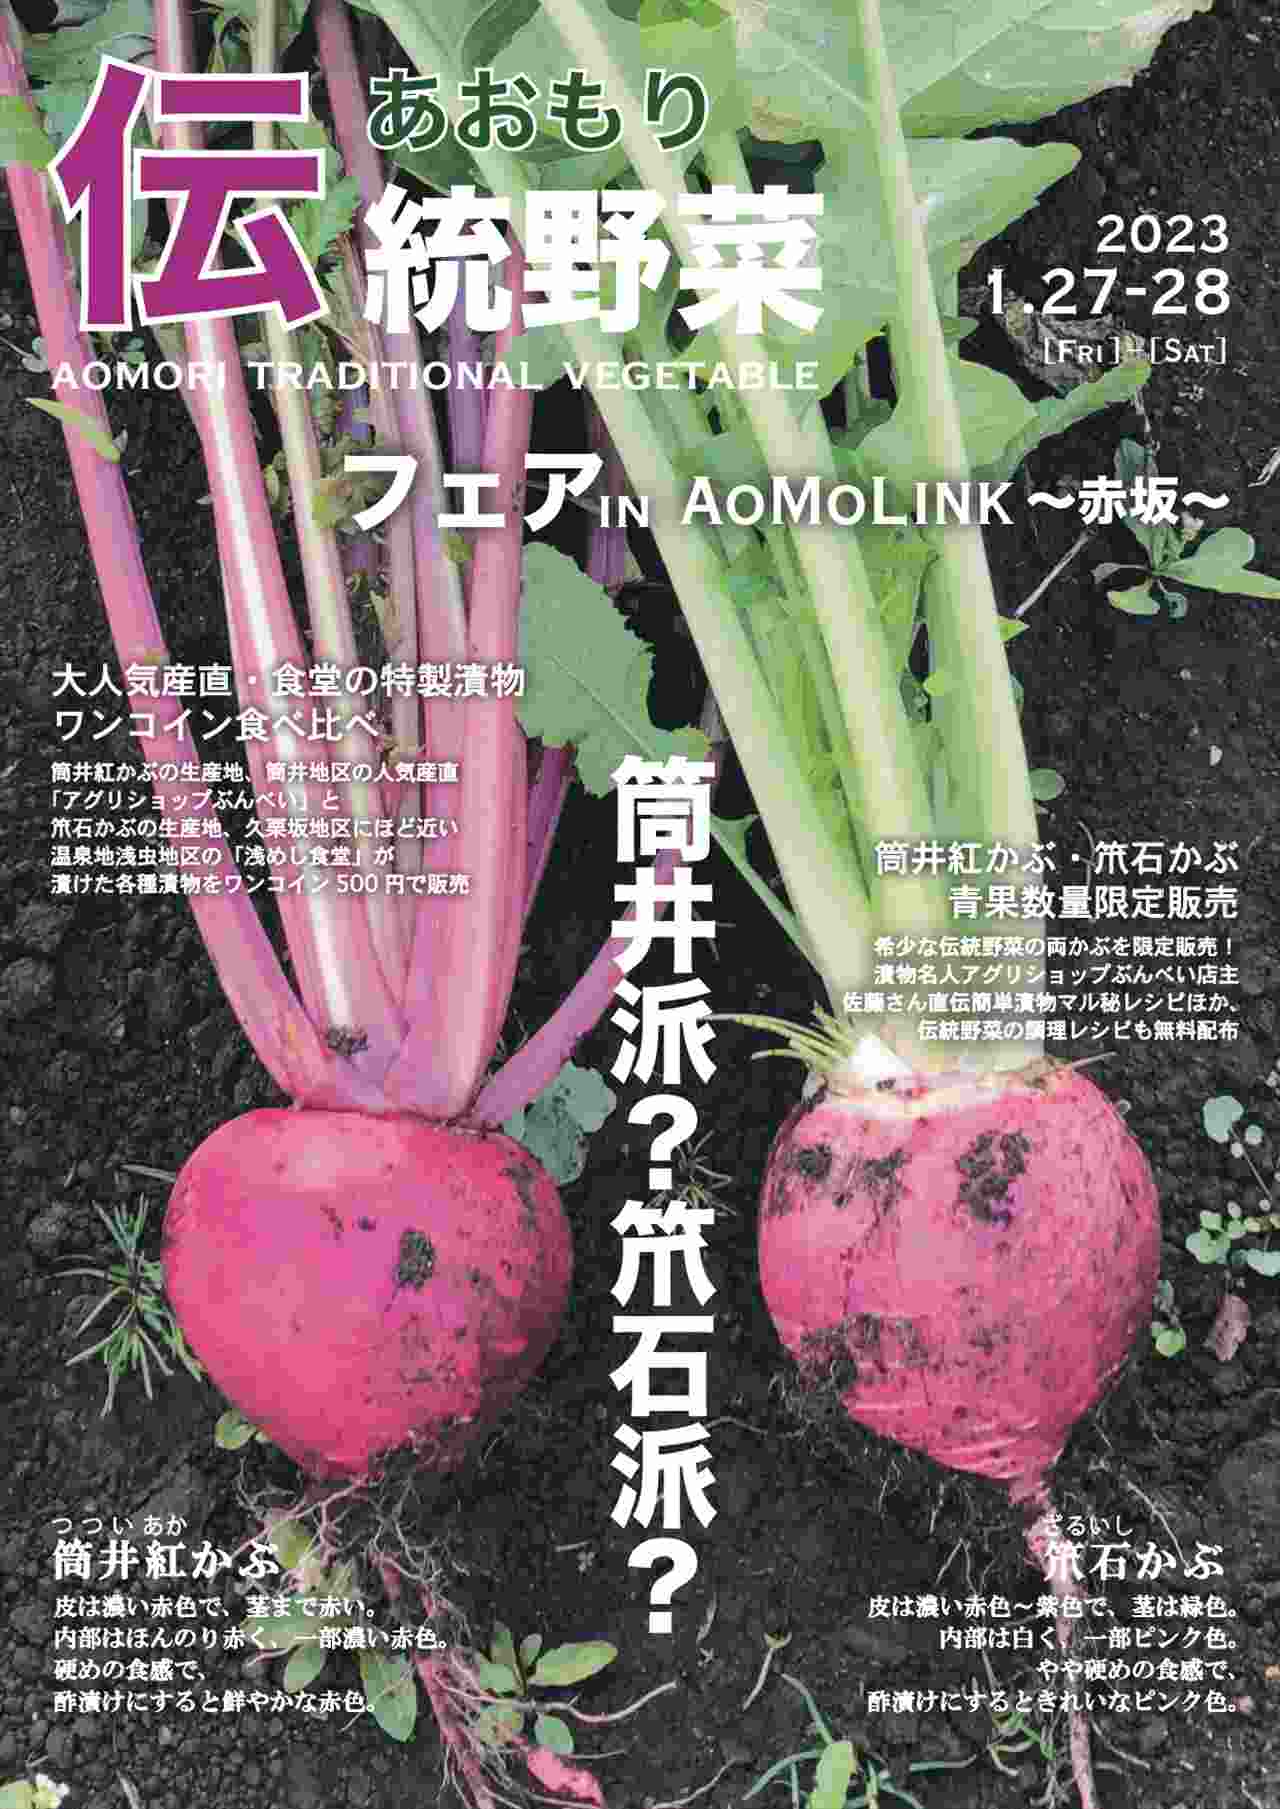 東京・赤坂で青森の伝統野菜フェア開催！「筒井紅かぶ」と「笊石＜ざるいし＞かぶ」の漬物が登場